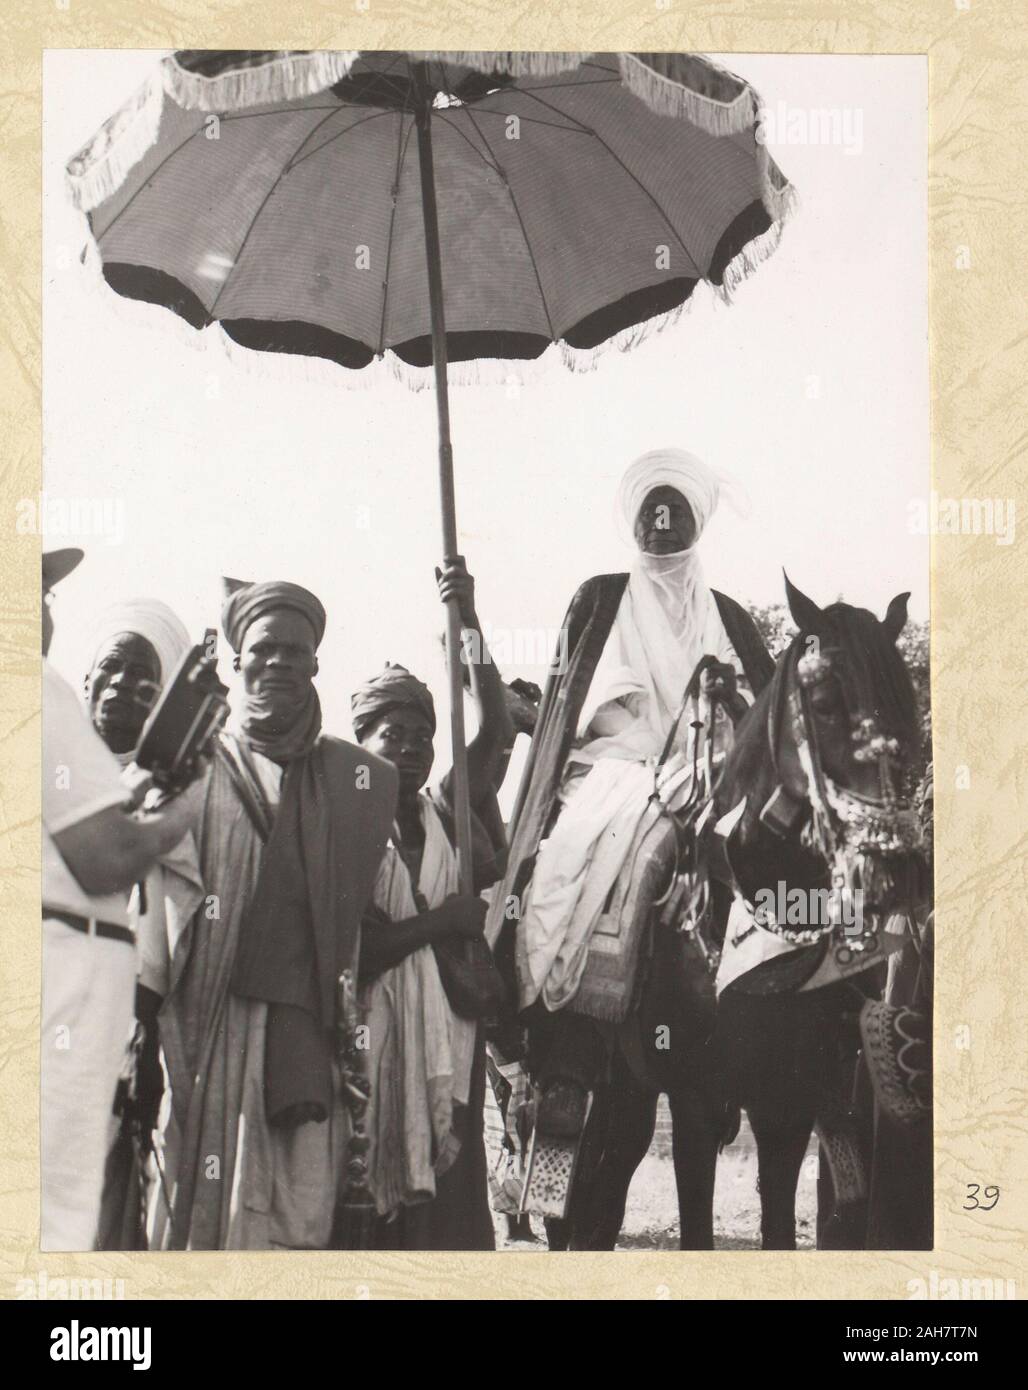 La Nigeria, Emir seduto su un cavallo sotto un ombrello cerimoniale. Geoffrey Morey può essere visto nell'angolo sinistro del tiro con la sua macchina fotografica. La didascalia recita: "L'ETSU (O) Emiro di BIDA', 1960. 2005/010/1/7/39. Foto Stock